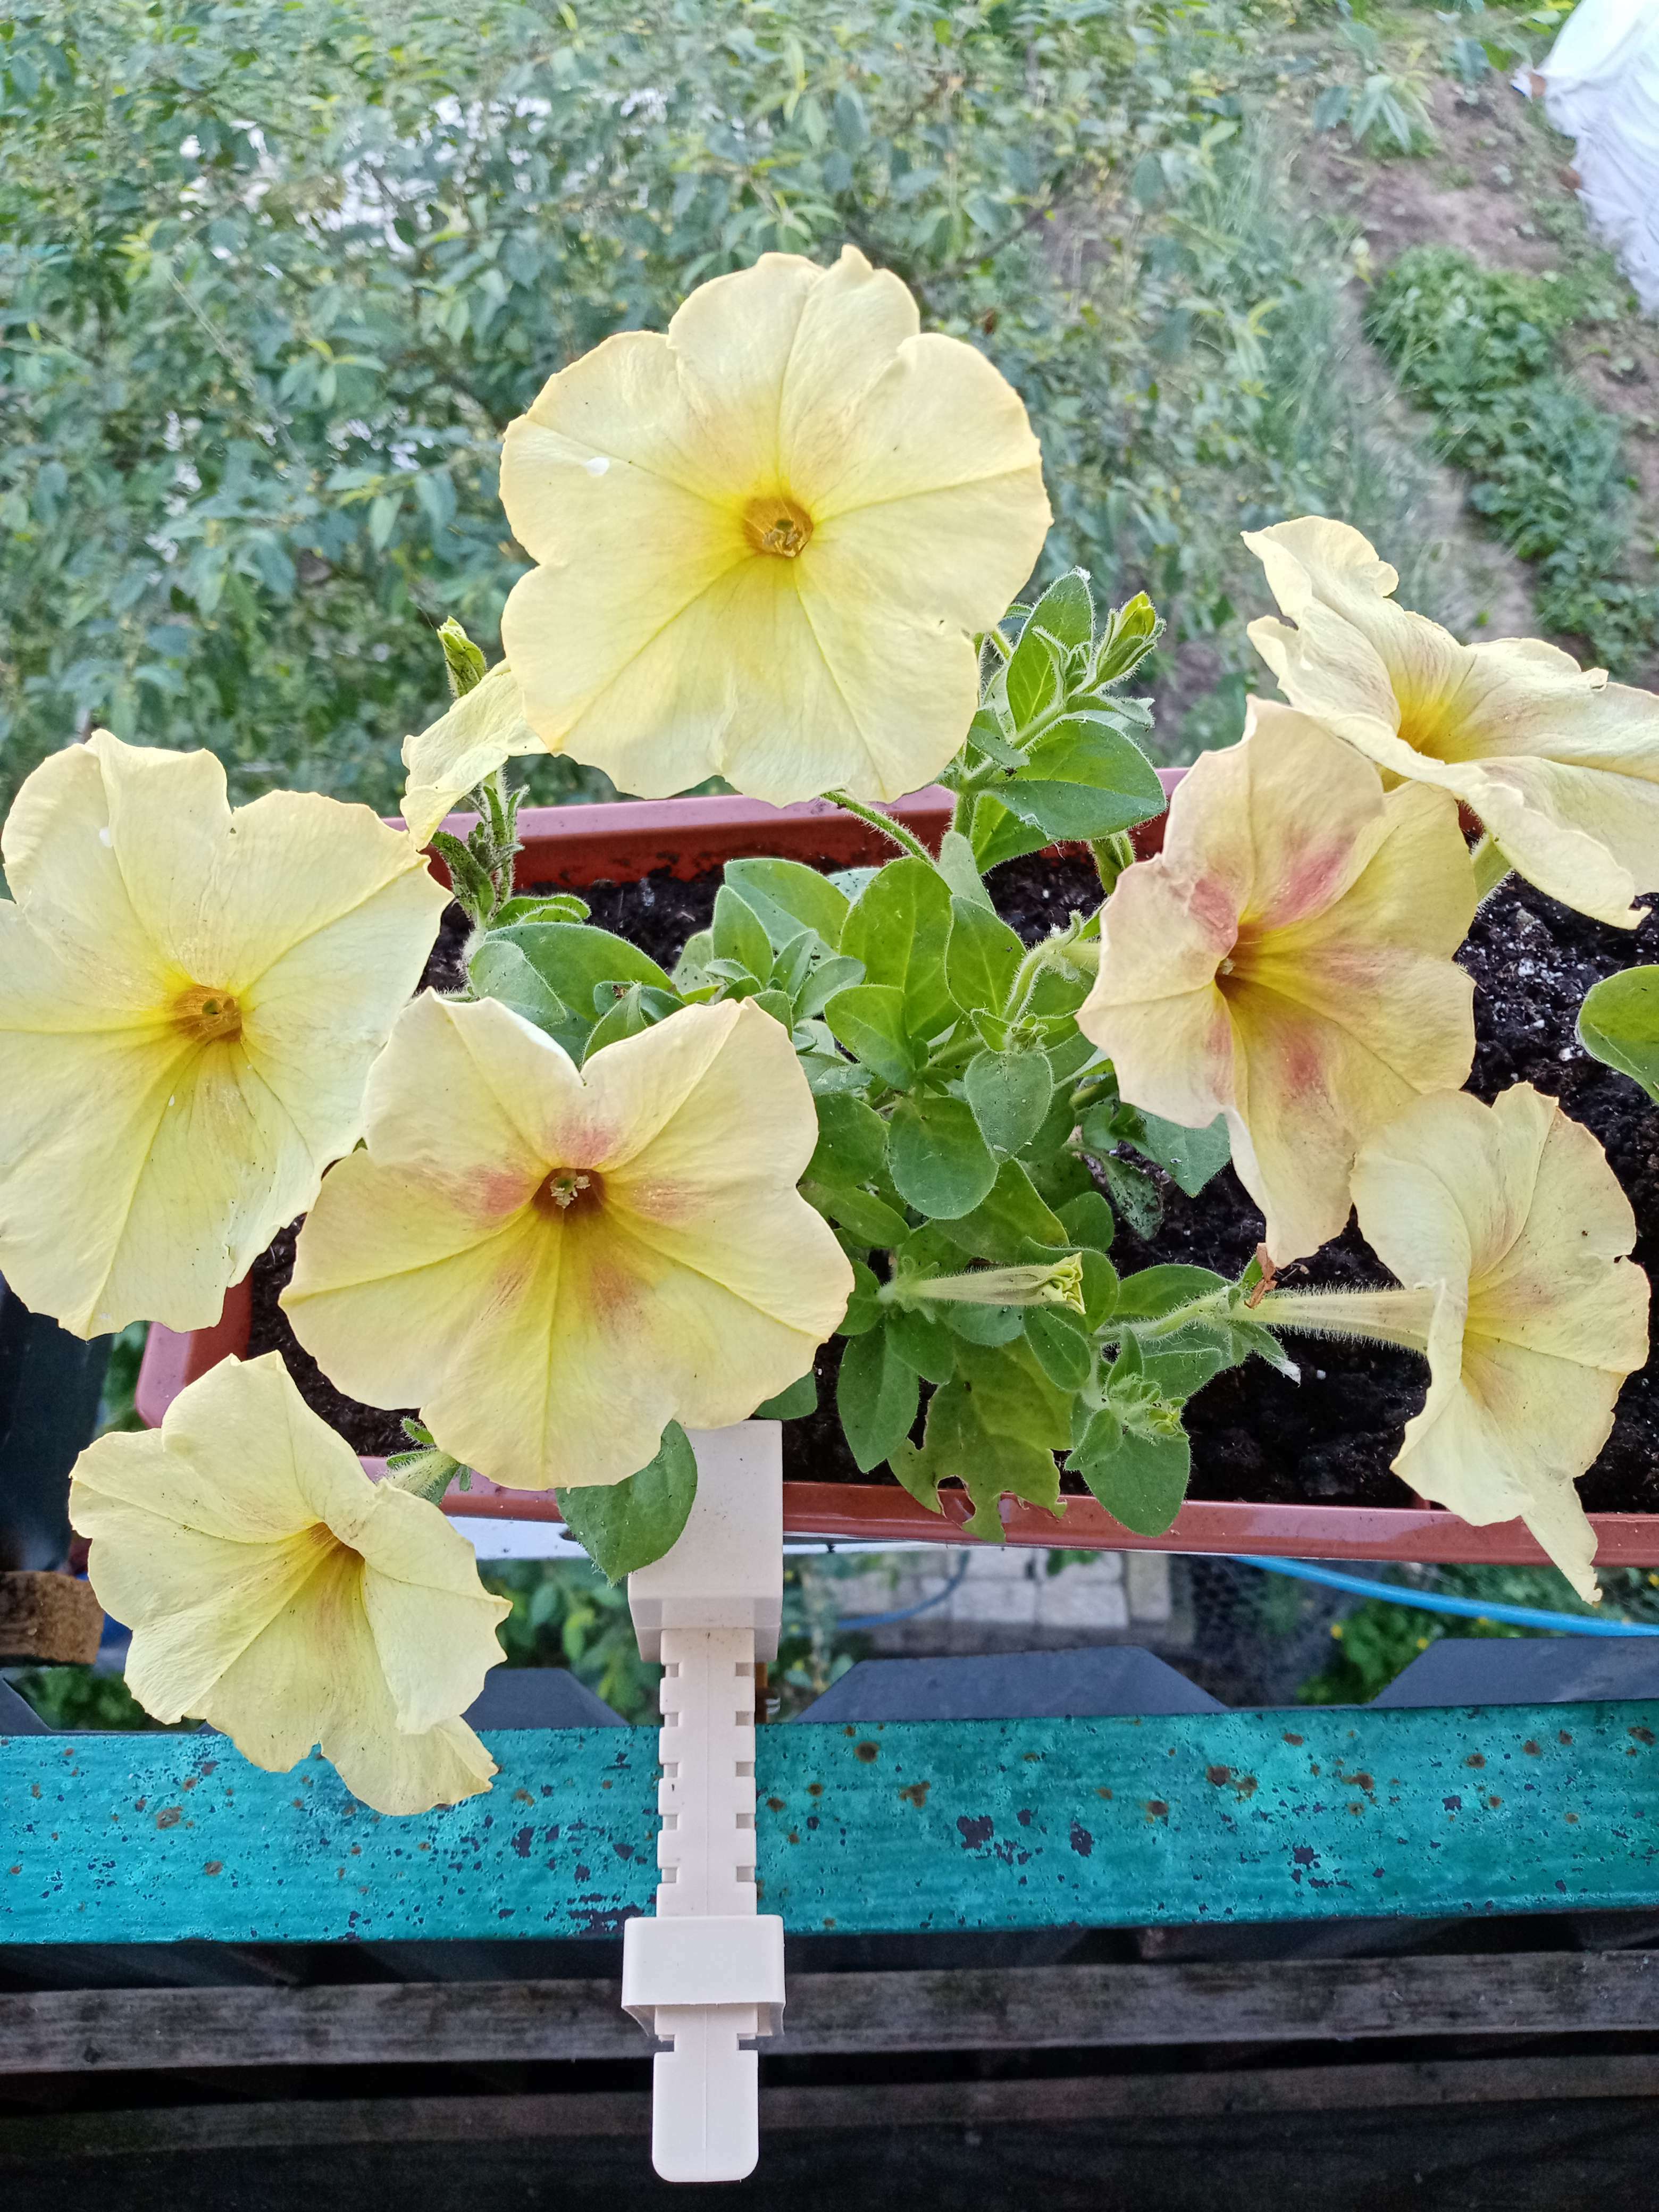 Фотография покупателя товара Семена цветов Петуния "Лавина", желтый каприз F1, 10 др